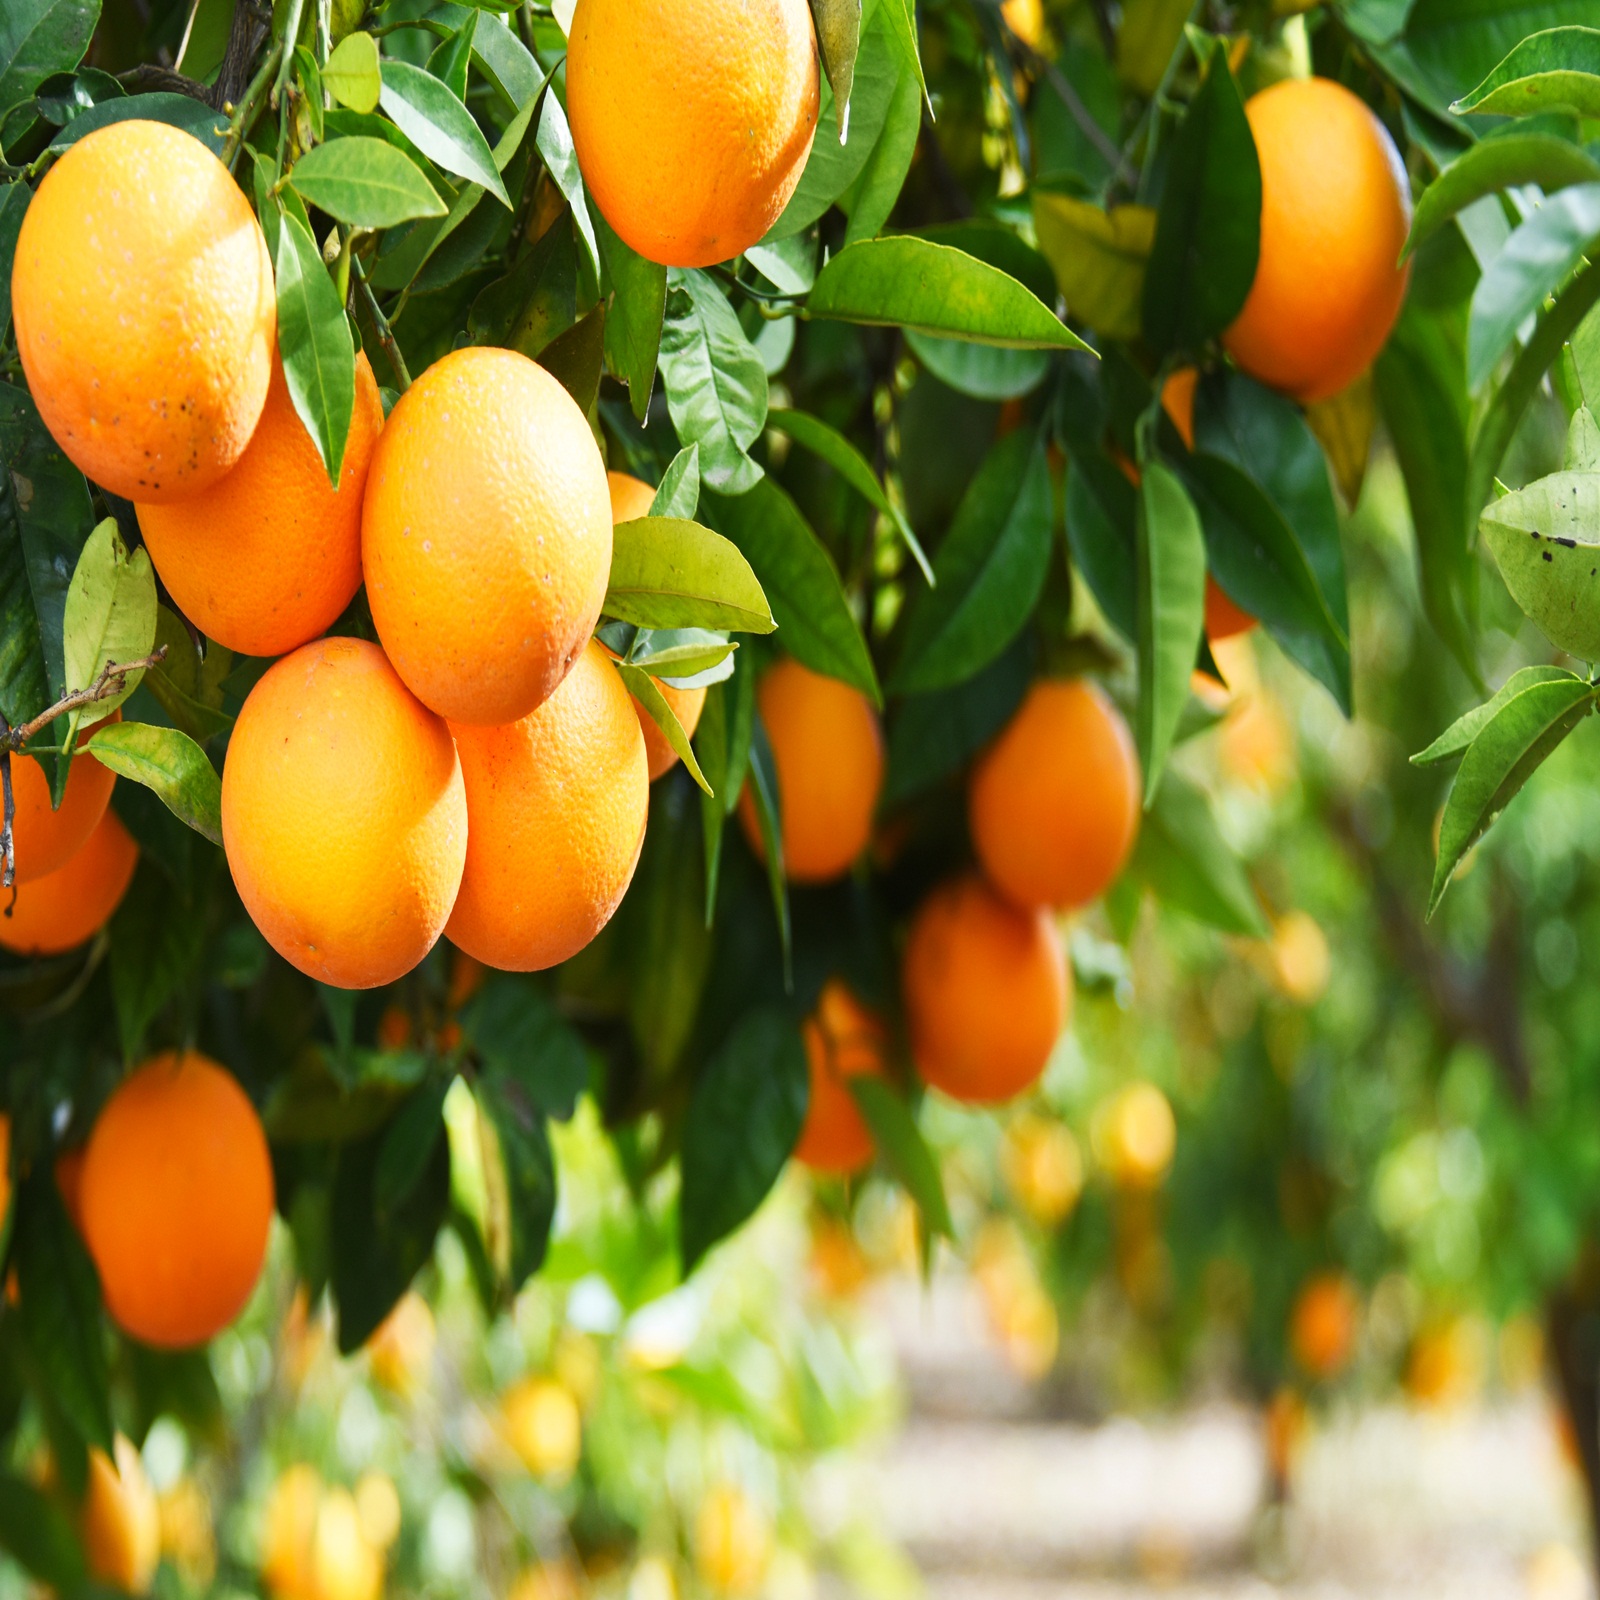 Oranges benefits : ਸਰਦੀਆਂ ਦਾ ਸੁਪਰ ਫੂਡ ਹੈ ਸੰਤਰਾ, ਇਮਿਊਨਿਟੀ ਵਧਾਉਣ ਤੋਂ ਲੈ ਕੇ ਭਾਰ ਘਟਾਉਣ ਤੱਕ ਕਰਦਾ ਹੈ ਮਦਦ